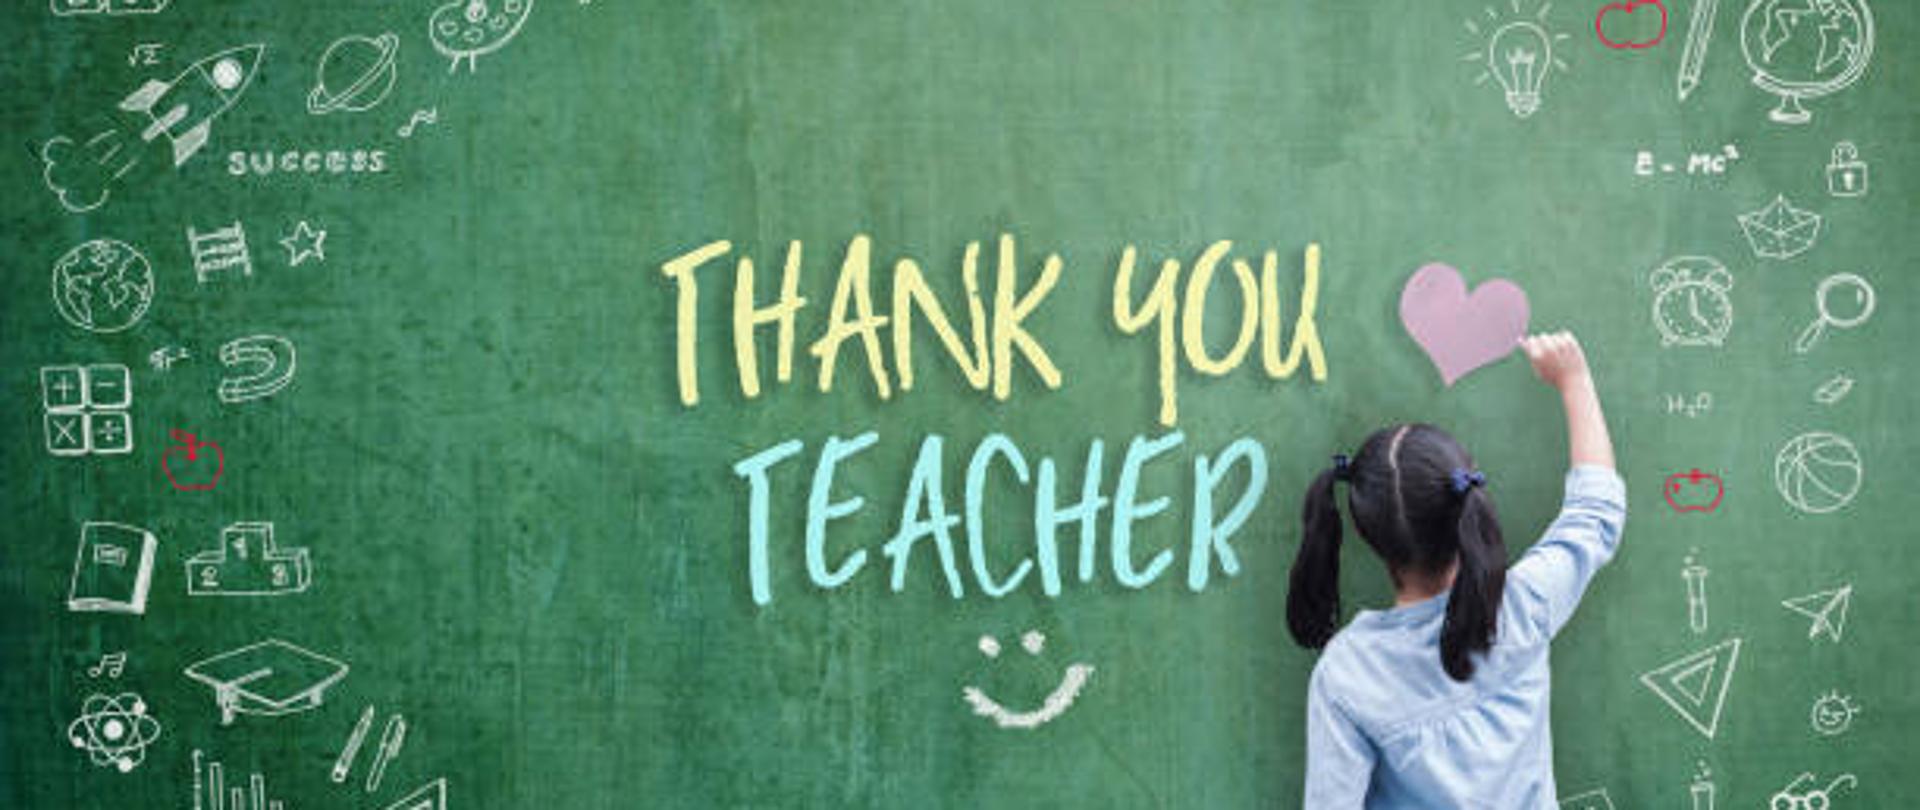 Dziękujemy Nauczyciel pozdrowienia dla koncepcji Światowego Dnia Nauczyciela z widokiem z tyłu ucznia szkolnego rysunek z edukacji edukacyjnej graficznej odręcznej ilustracji ikona na zielonej tablicy